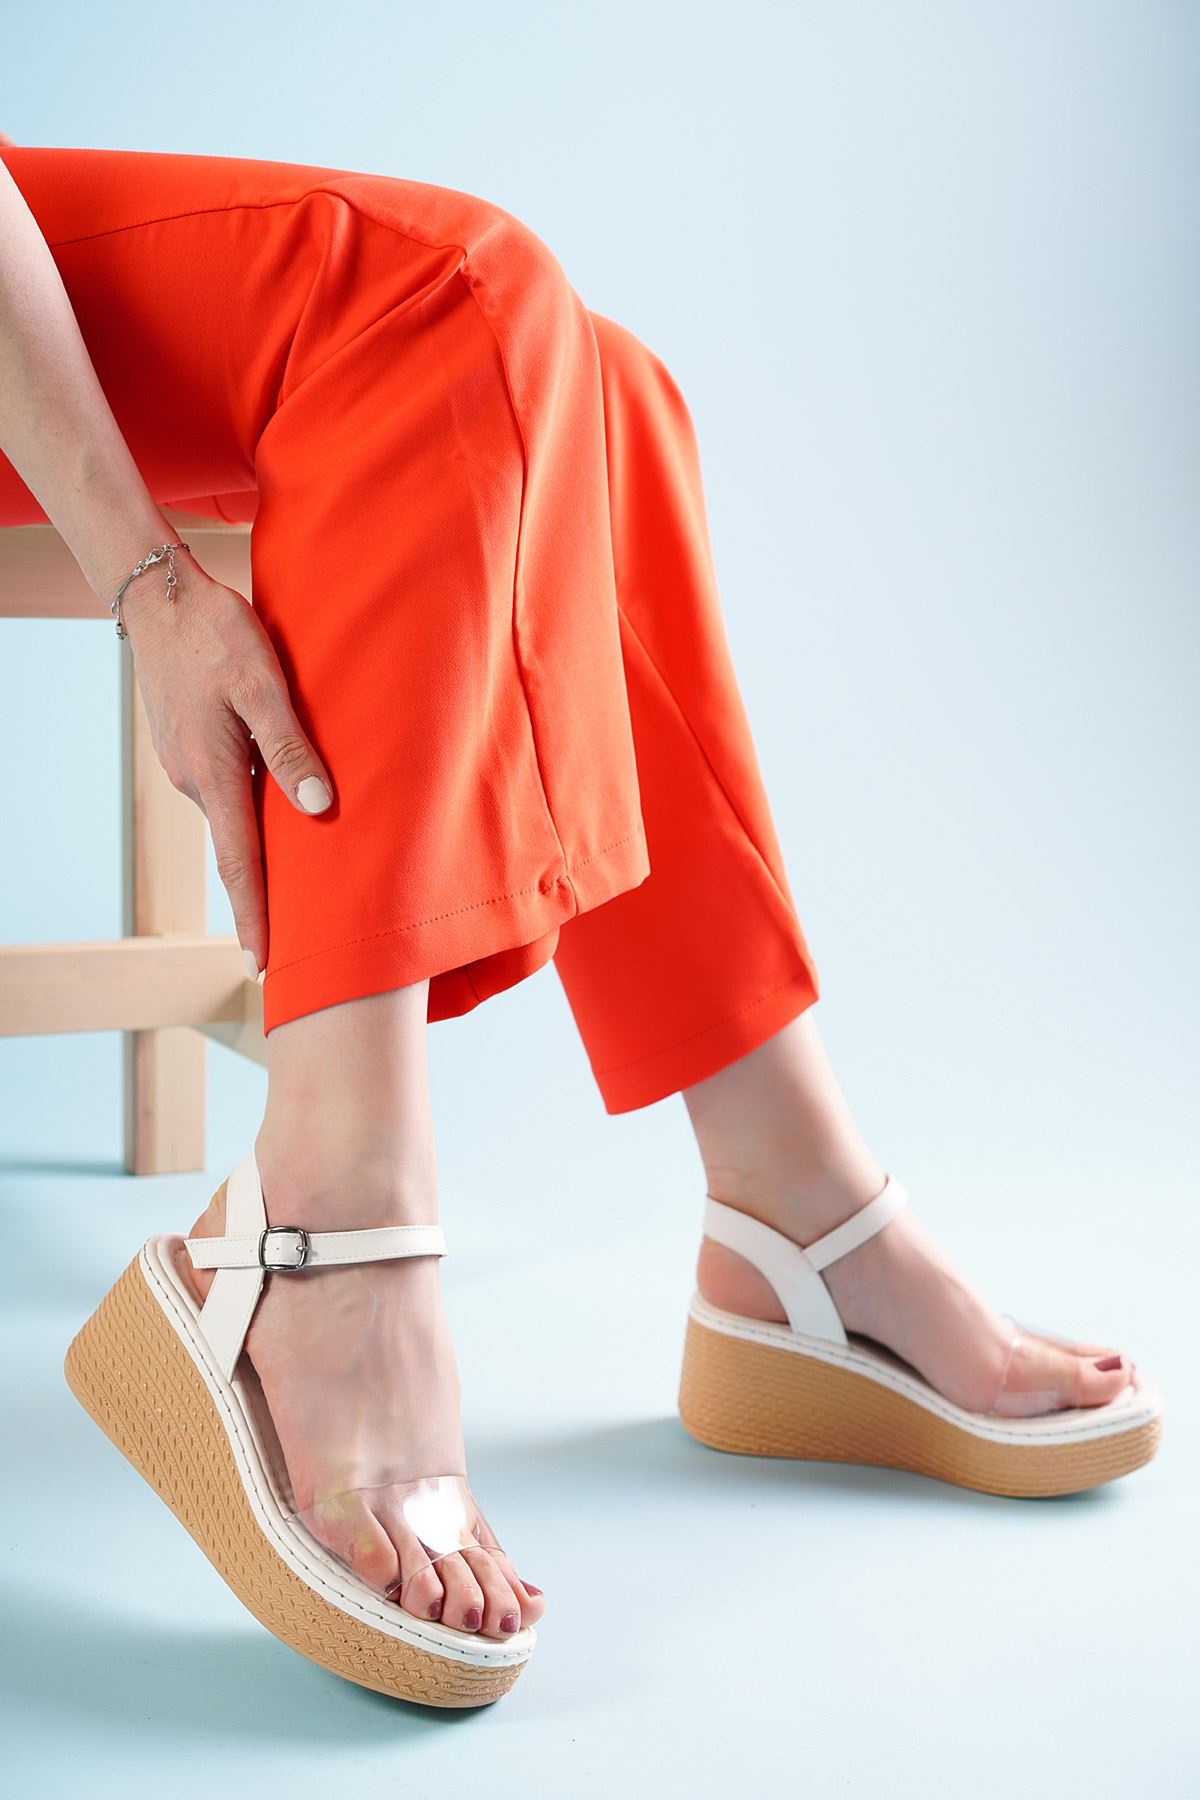 Hive Beyaz Şeffaf Dolgu Topuklu Kadın Ayakkabı